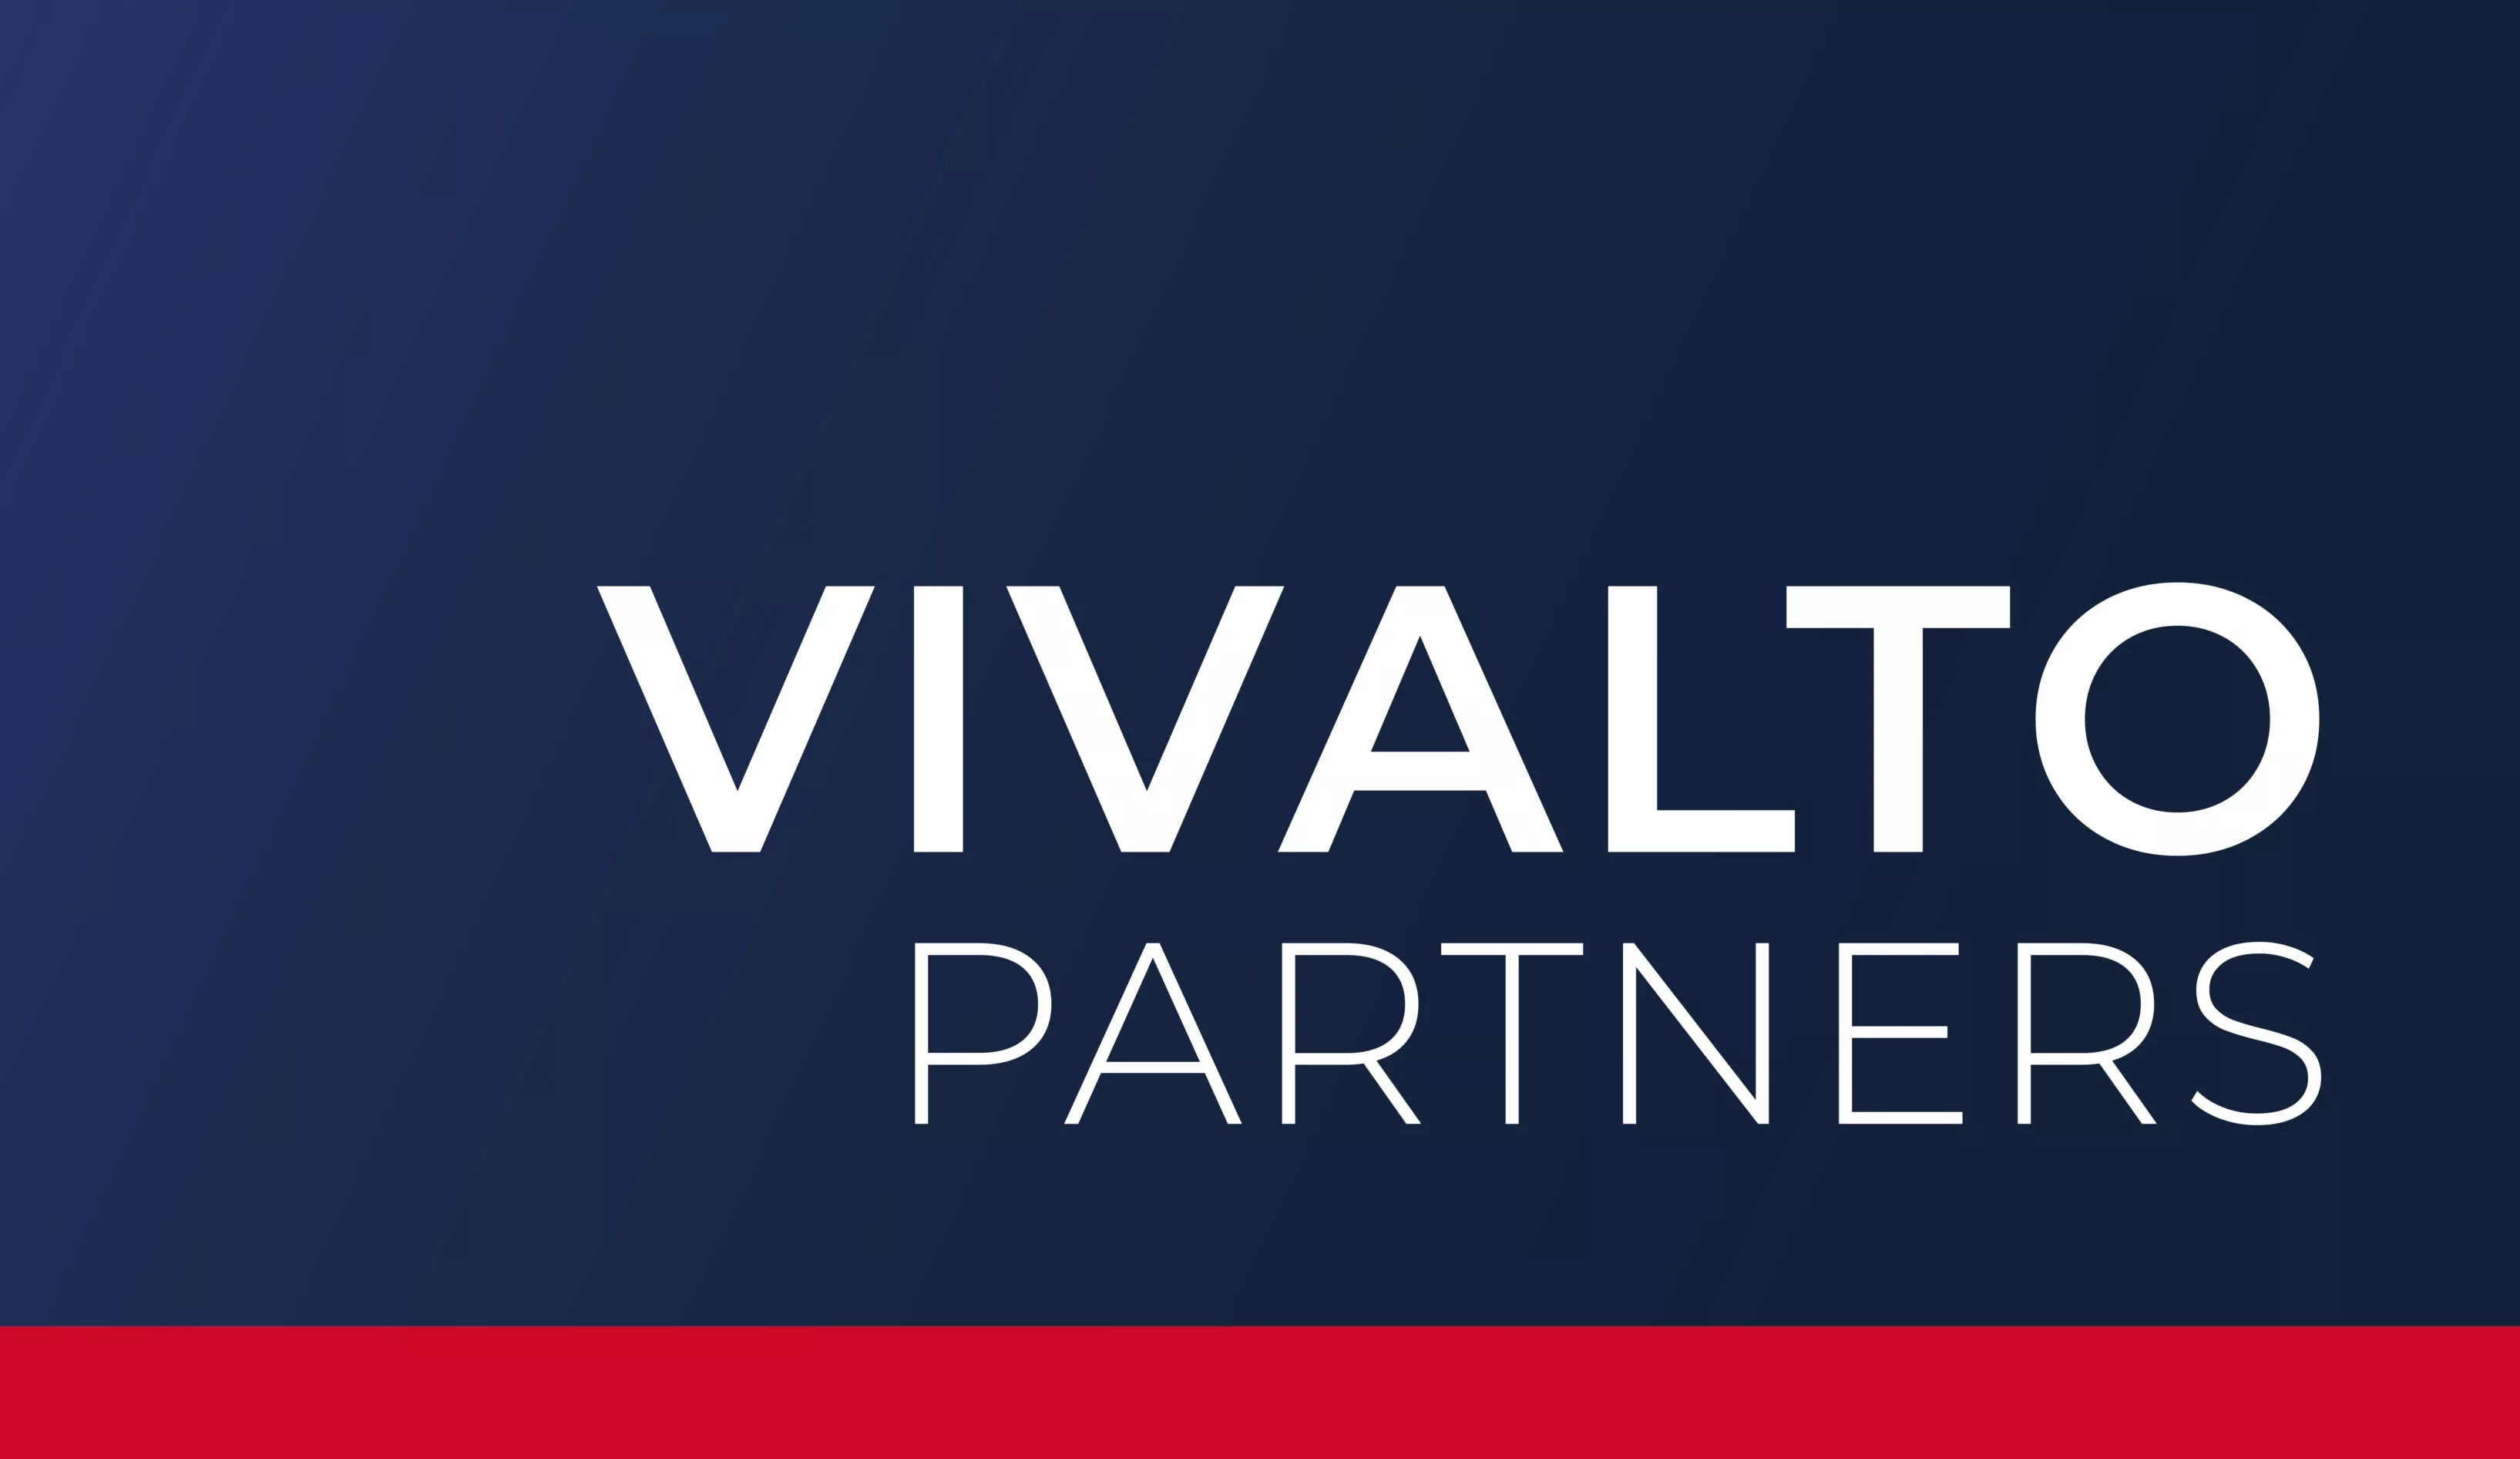 Vivalto Partners est fière d’annoncer le closing final de sa première génération de fonds à près de 700M€